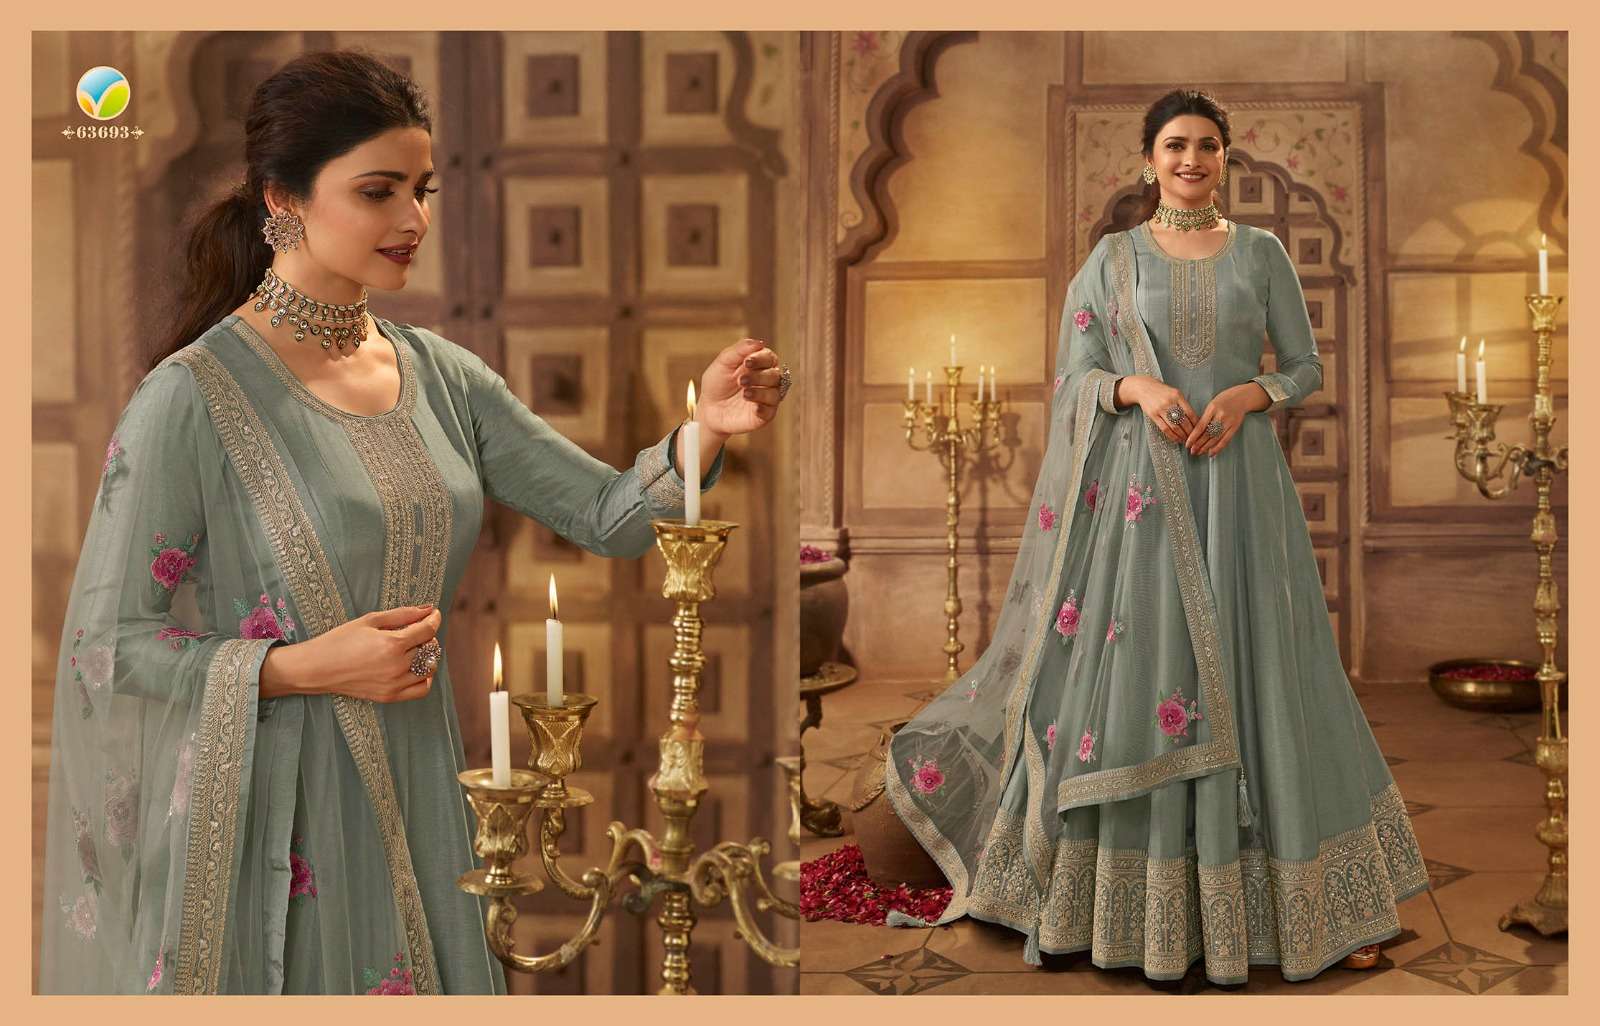 vinay fashion noor mahal 63691-63698 series exclusive designer salwar kameez catalogue online market surat 